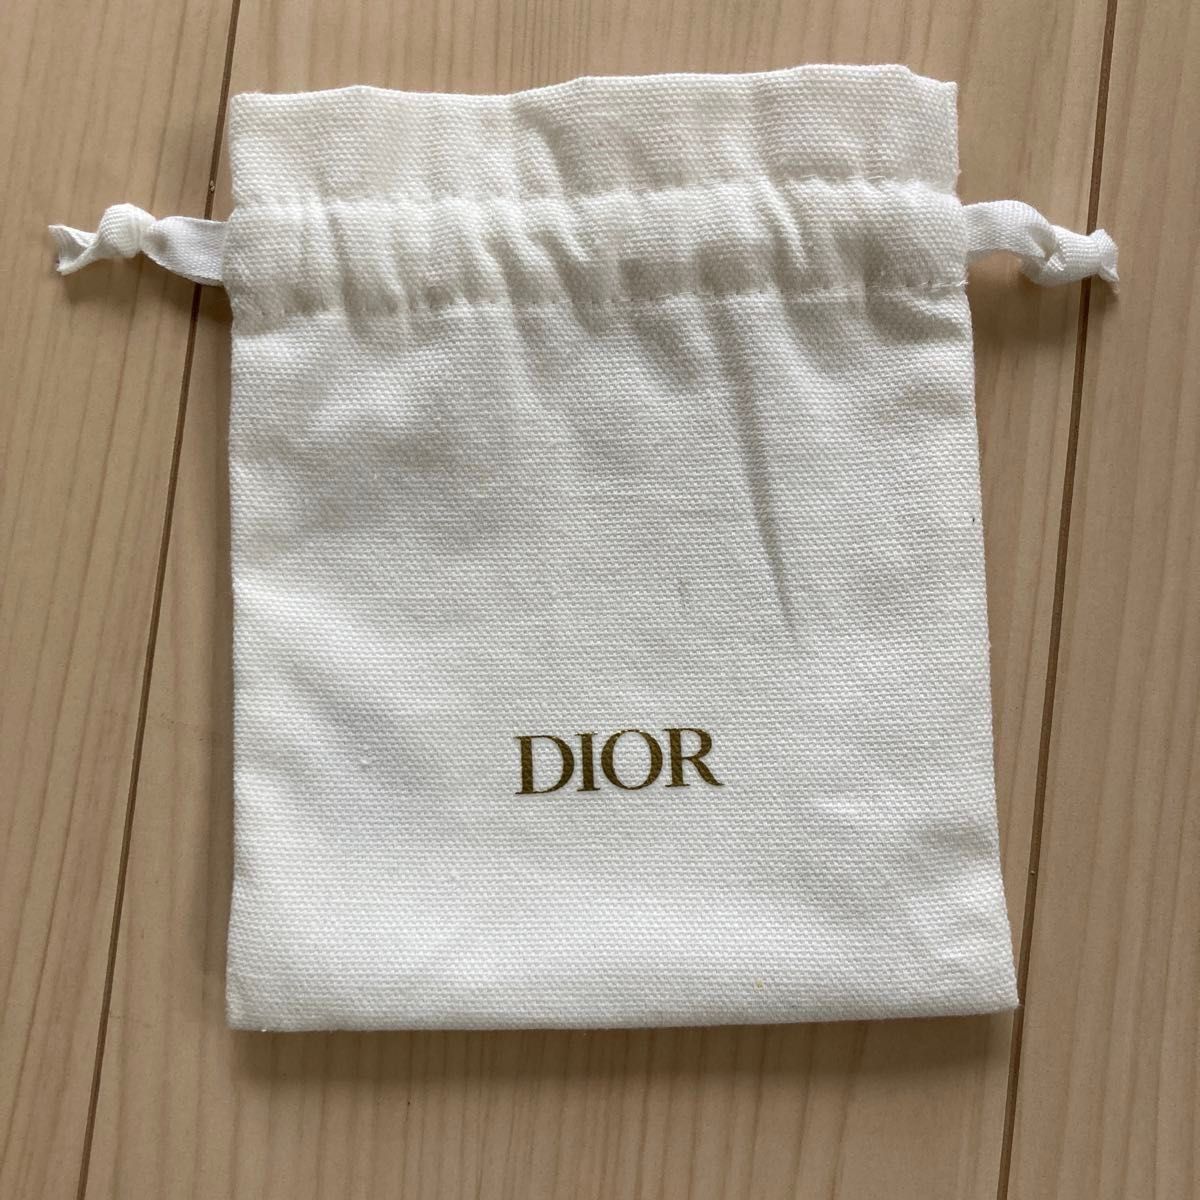 【新品★未使用】 Dior ソヴァージュ エリクシール 1ml ミニサイズ